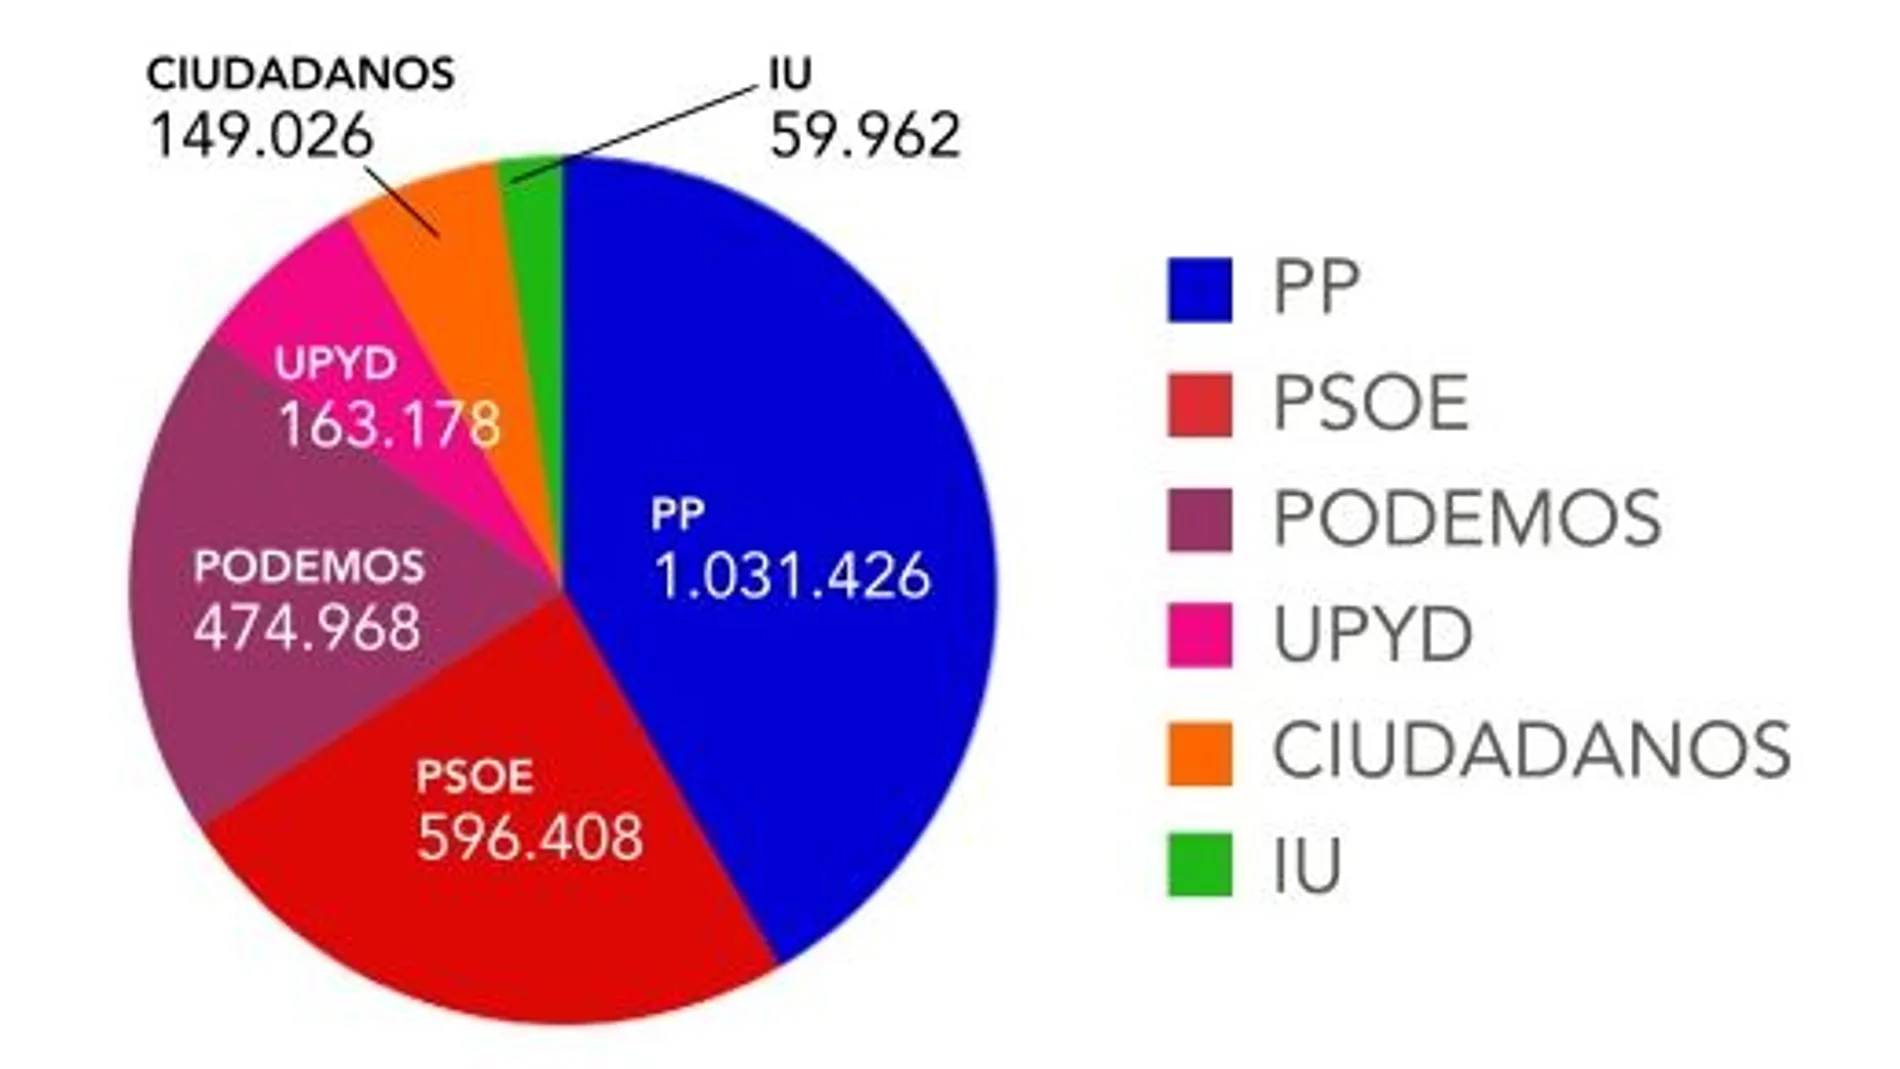 El PP dobla al PSOE en menciones en redes sociales